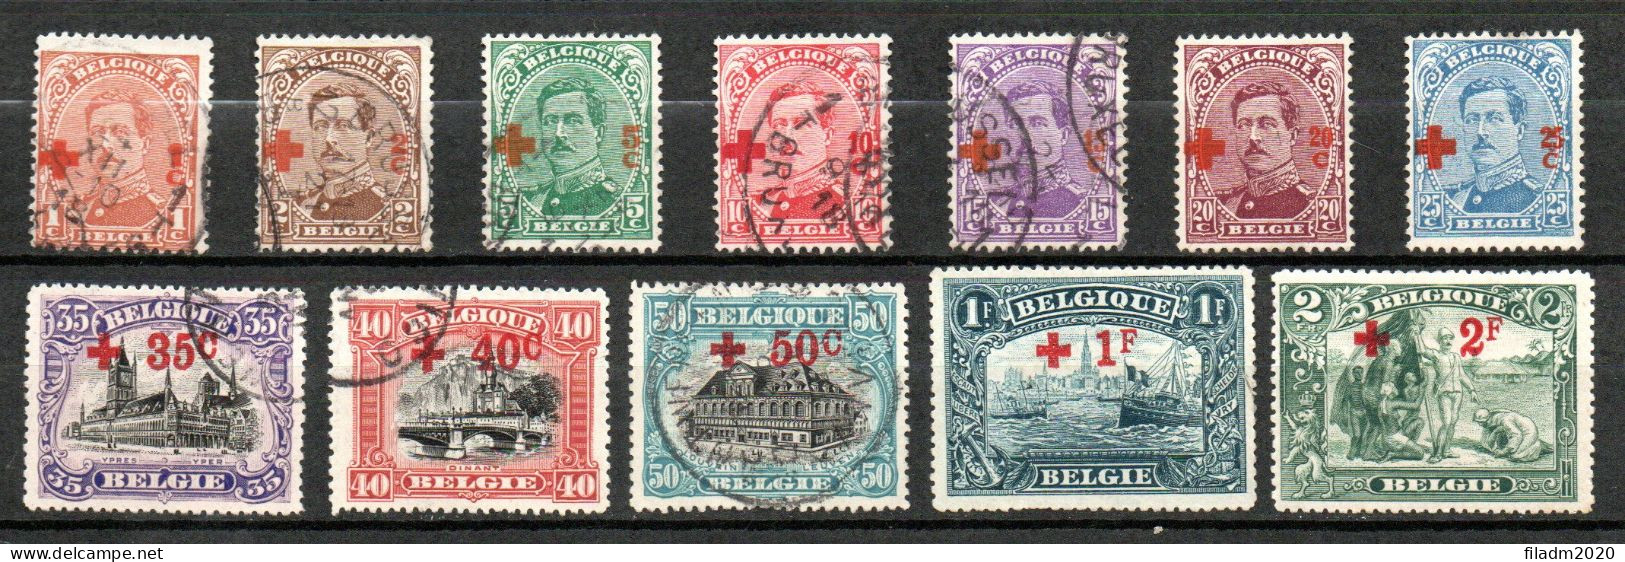 150/161 Gestempeld - Cote 285,00 Euro - 1918 Croix-Rouge